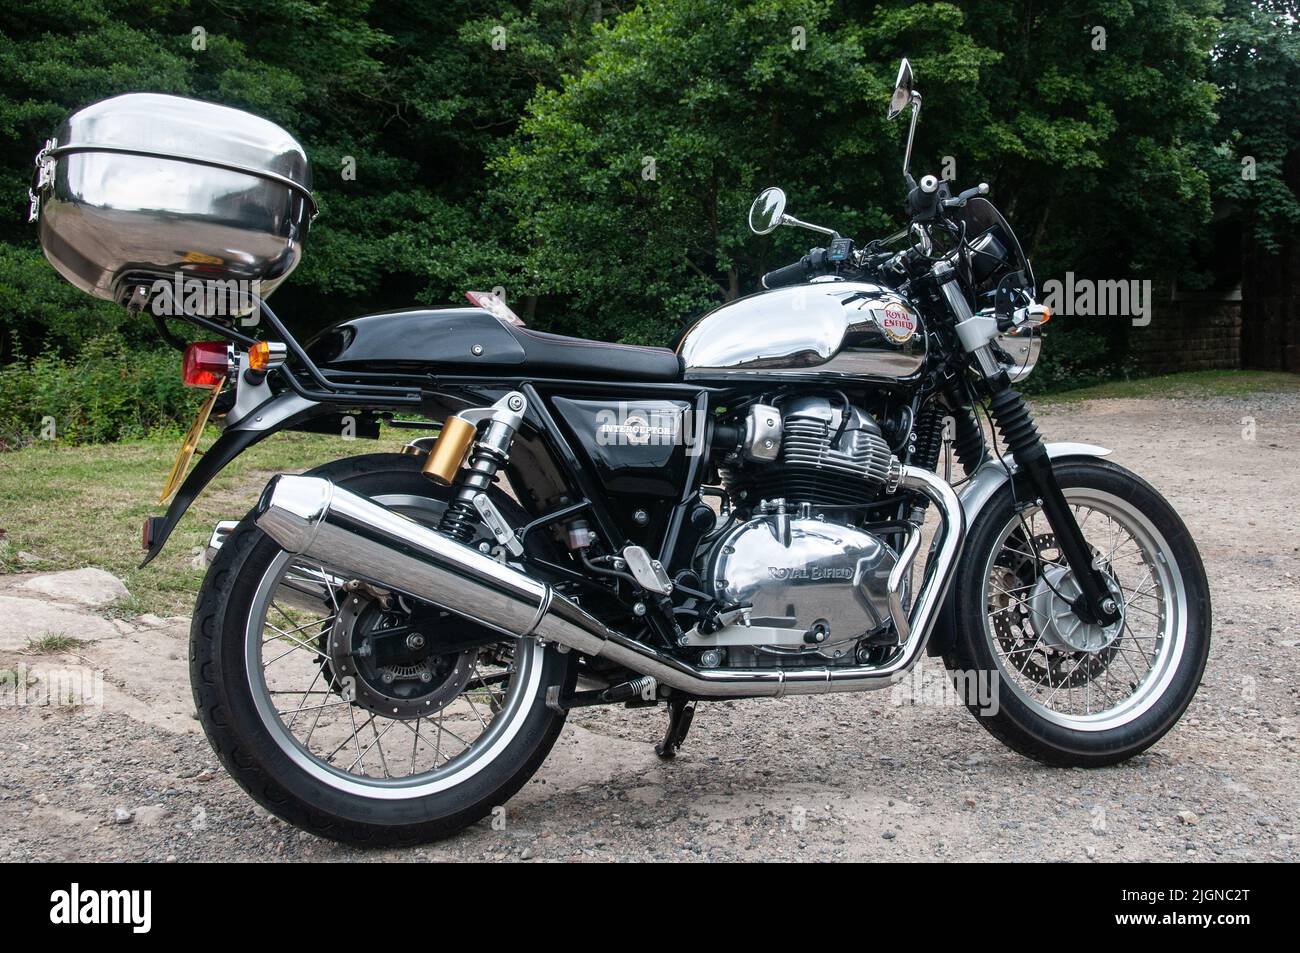 Royal Enfield Interceptor 650 retro-styled motorcycle. UK's best-selling big bike in 2020 Stock Photo